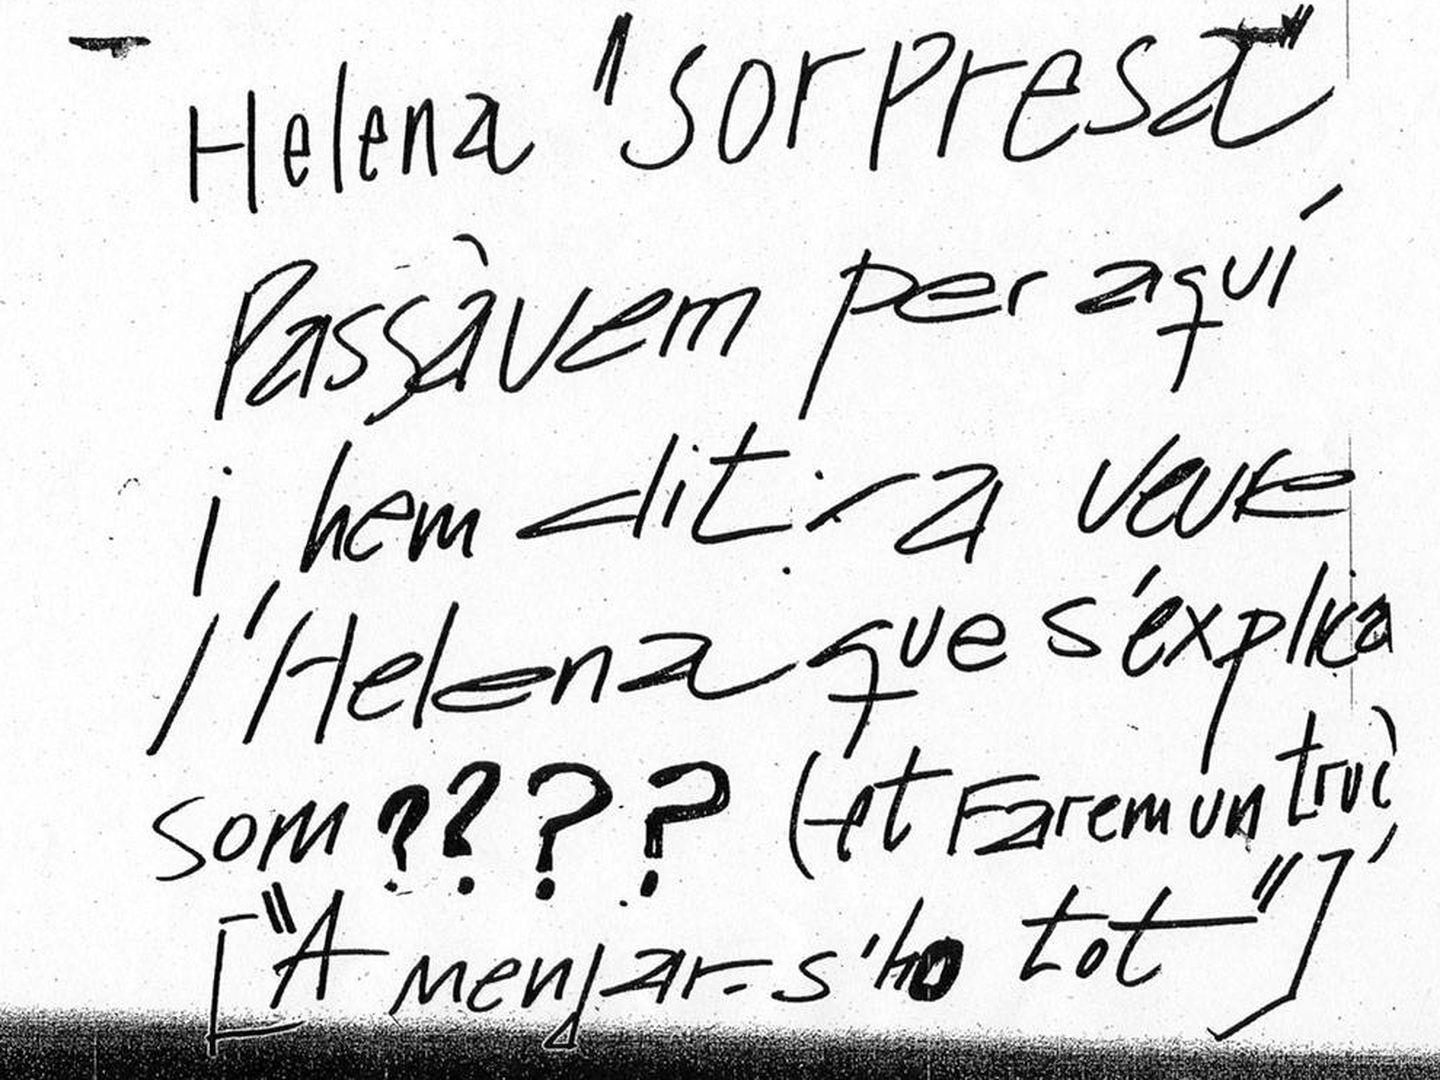 La primera nota anónima que recibió Helena Jubany el 17 de septiembre de 2001.